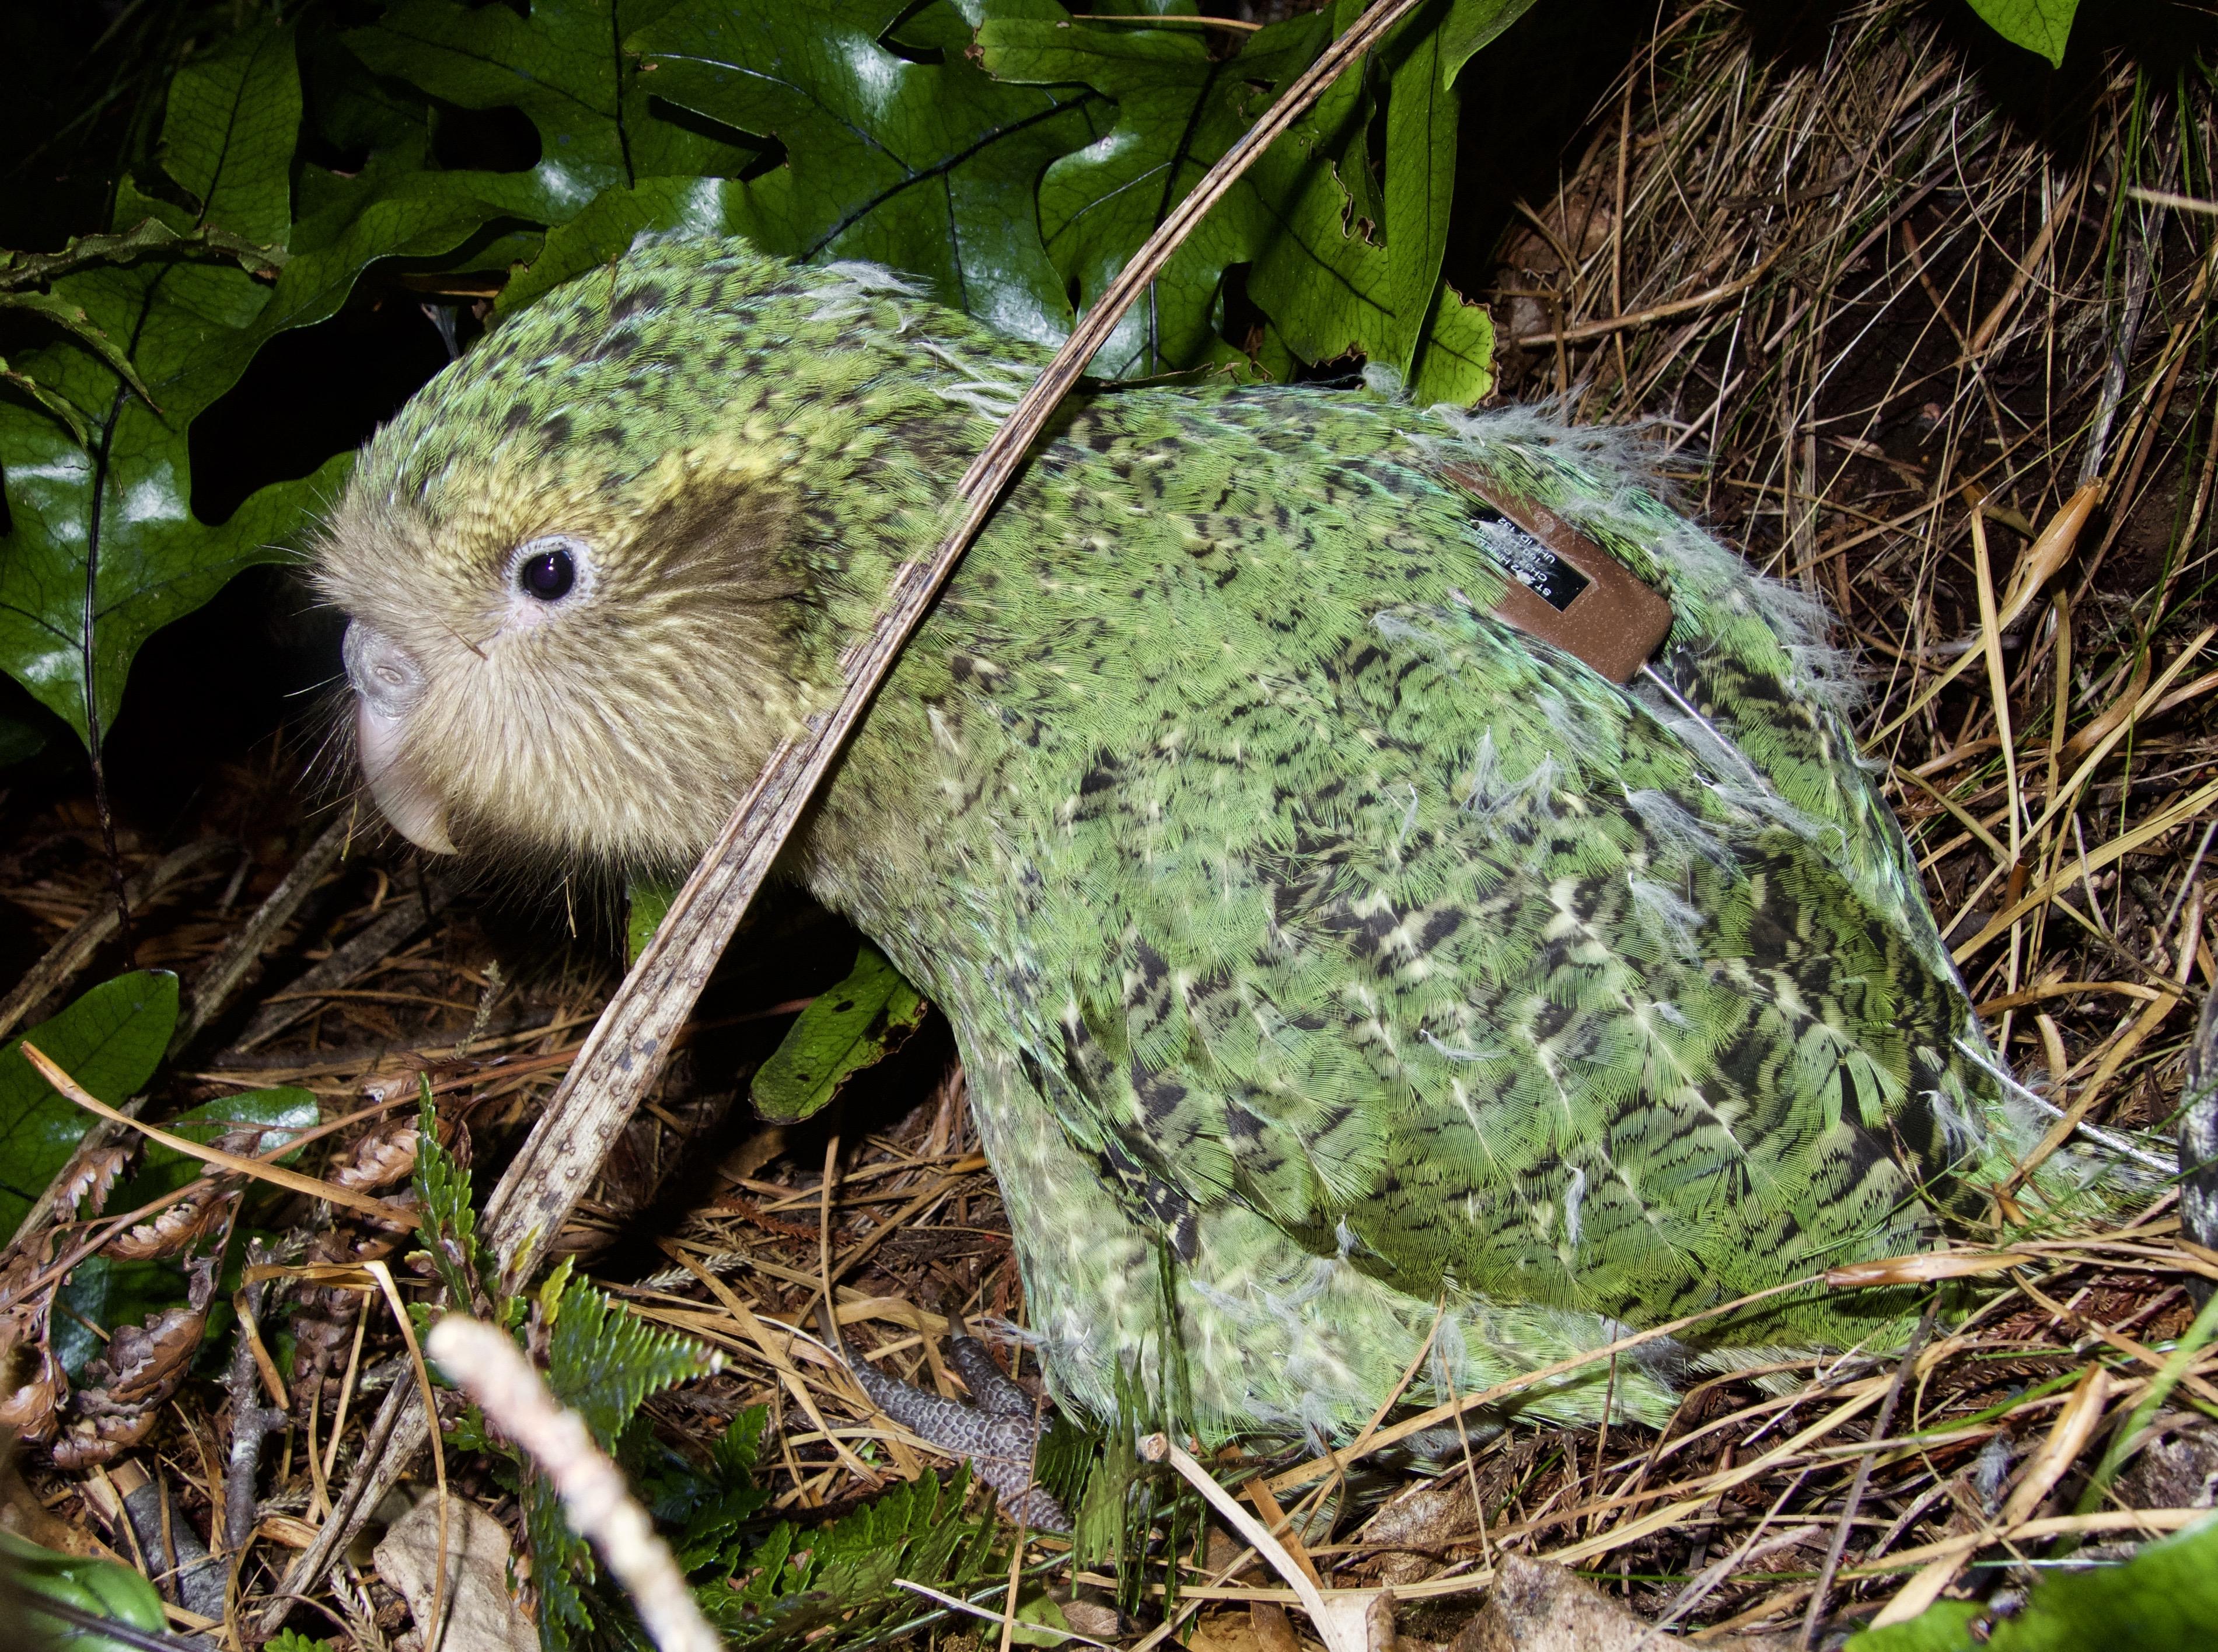 Les kakapos sont tous équipé d'un émetteur – un petit boîtier arrimé sur leur dos – afin de suivre leurs mouvements et pouvoir les retrouver sur les îles pour leur faire régulièrement un bilan de santé. [Department of Conservation, New Zealand - Andrew Digby]